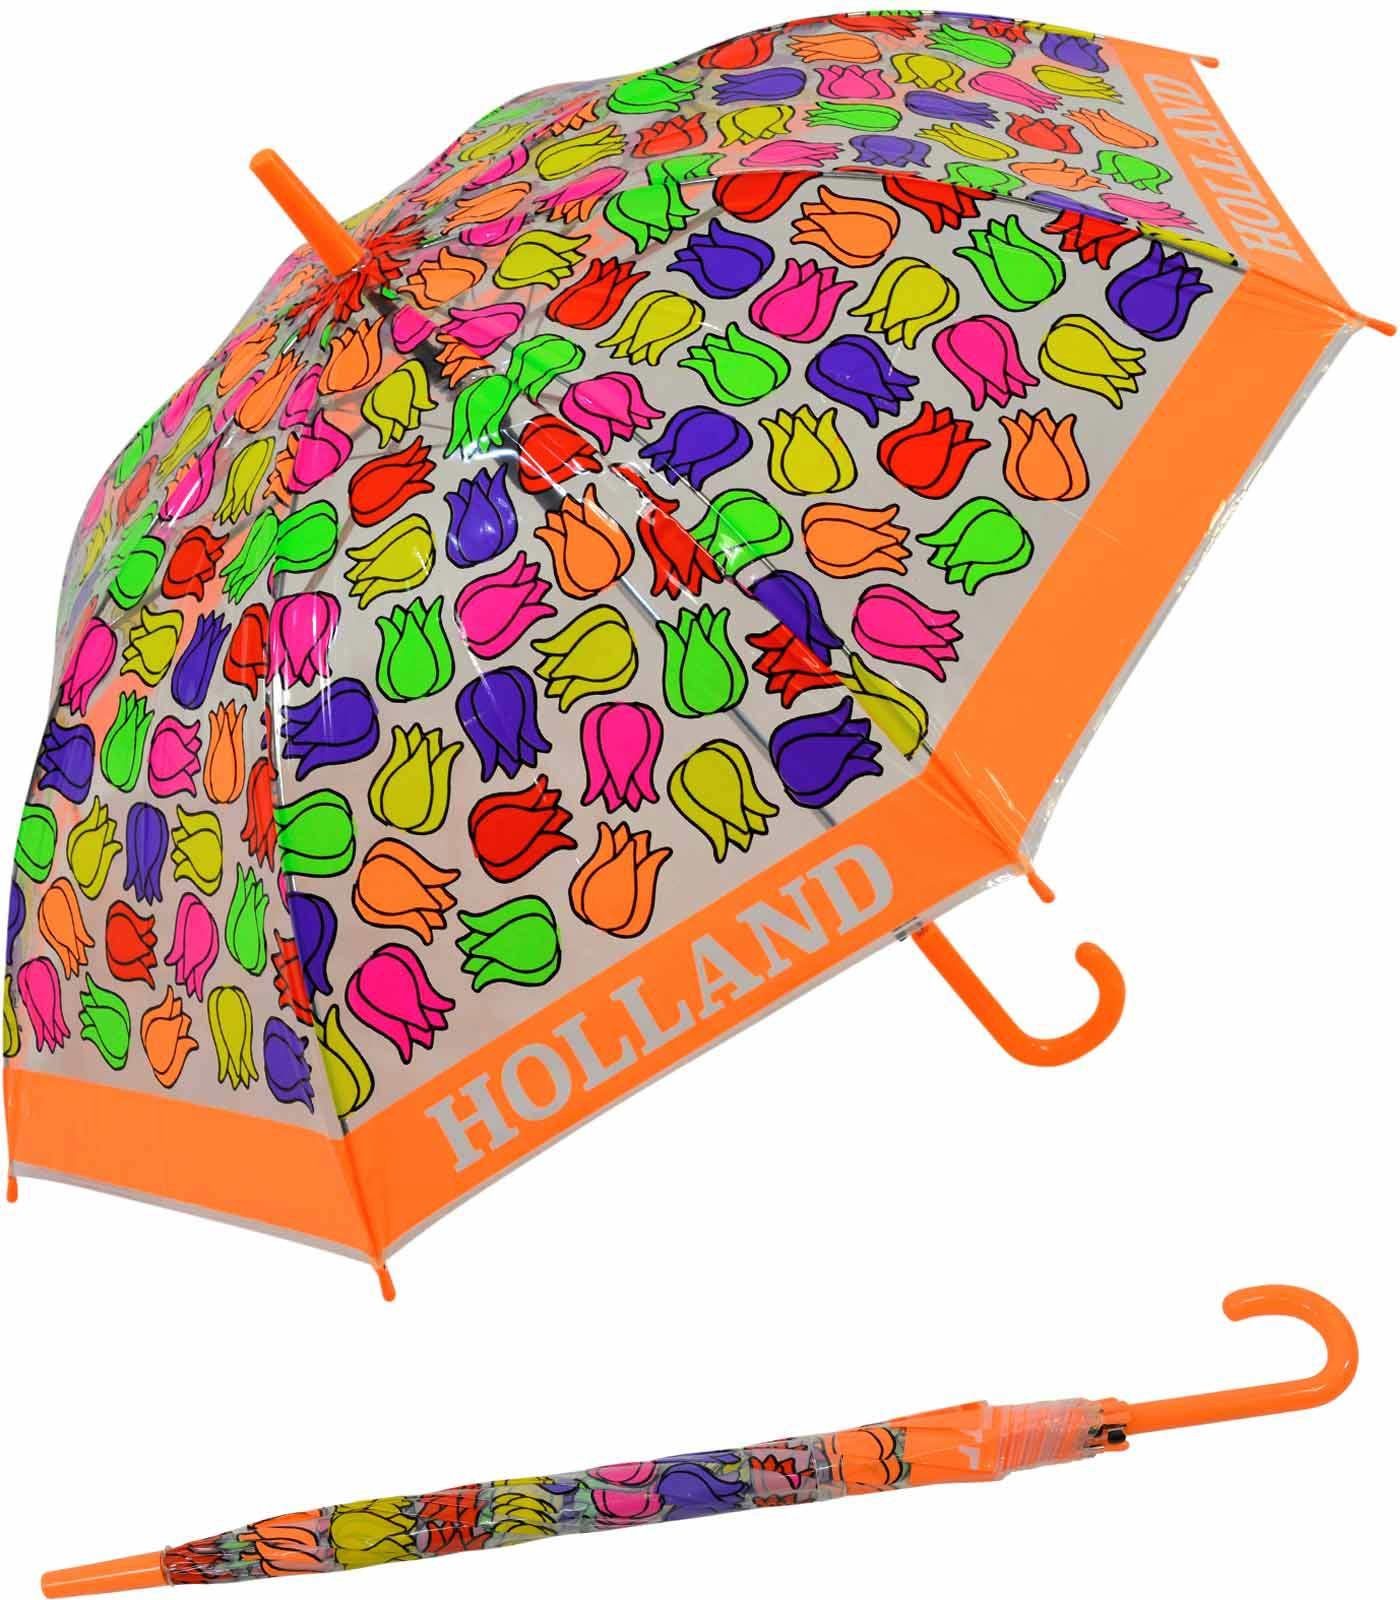 bunt durchsichtig Kinderschirm - transparent Langregenschirm Impliva Falconetti orange Tulpen,